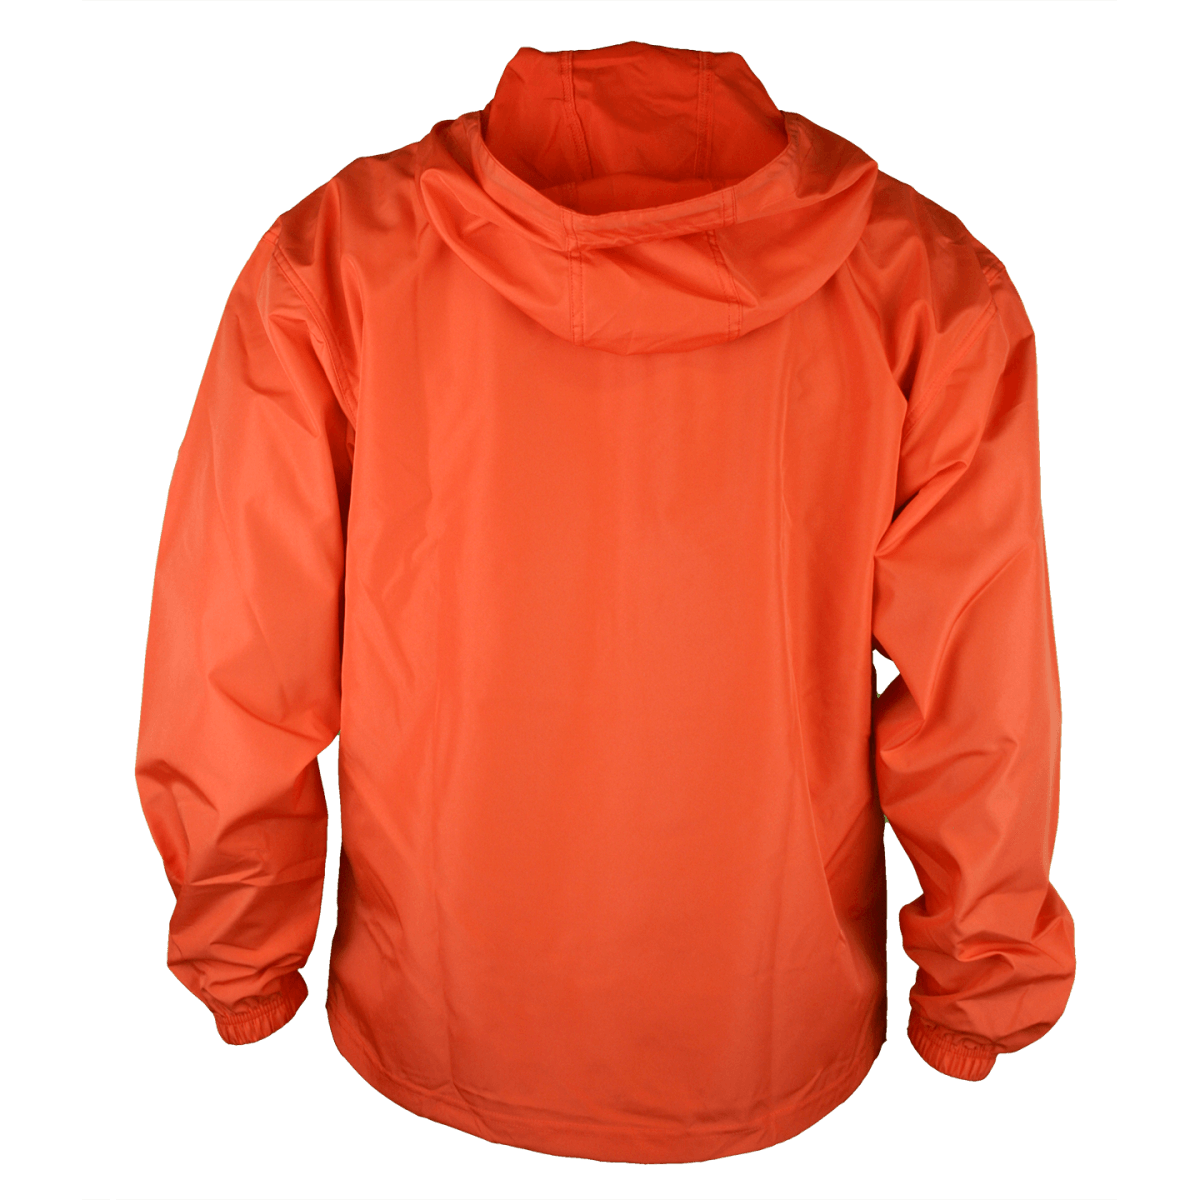 orange champion jacket